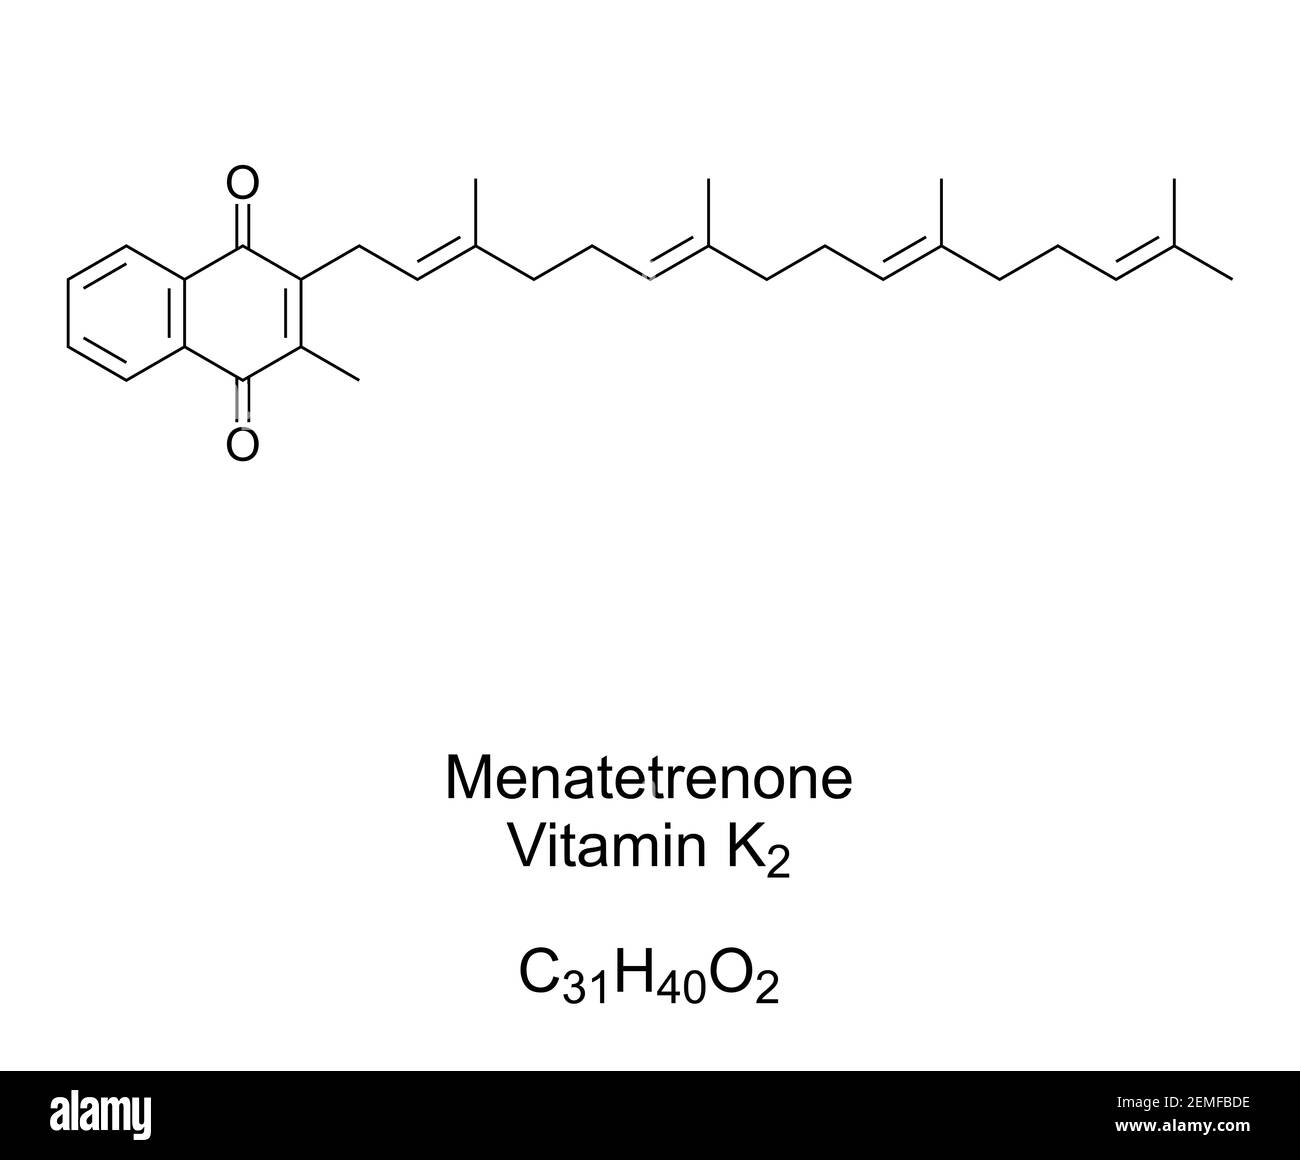 Menatetrenone, vitamina K2, menaquinone, formula chimica e struttura  scheletrica. Noto anche come MK-4, è una delle 9 forme di vitamina K2 Foto  stock - Alamy